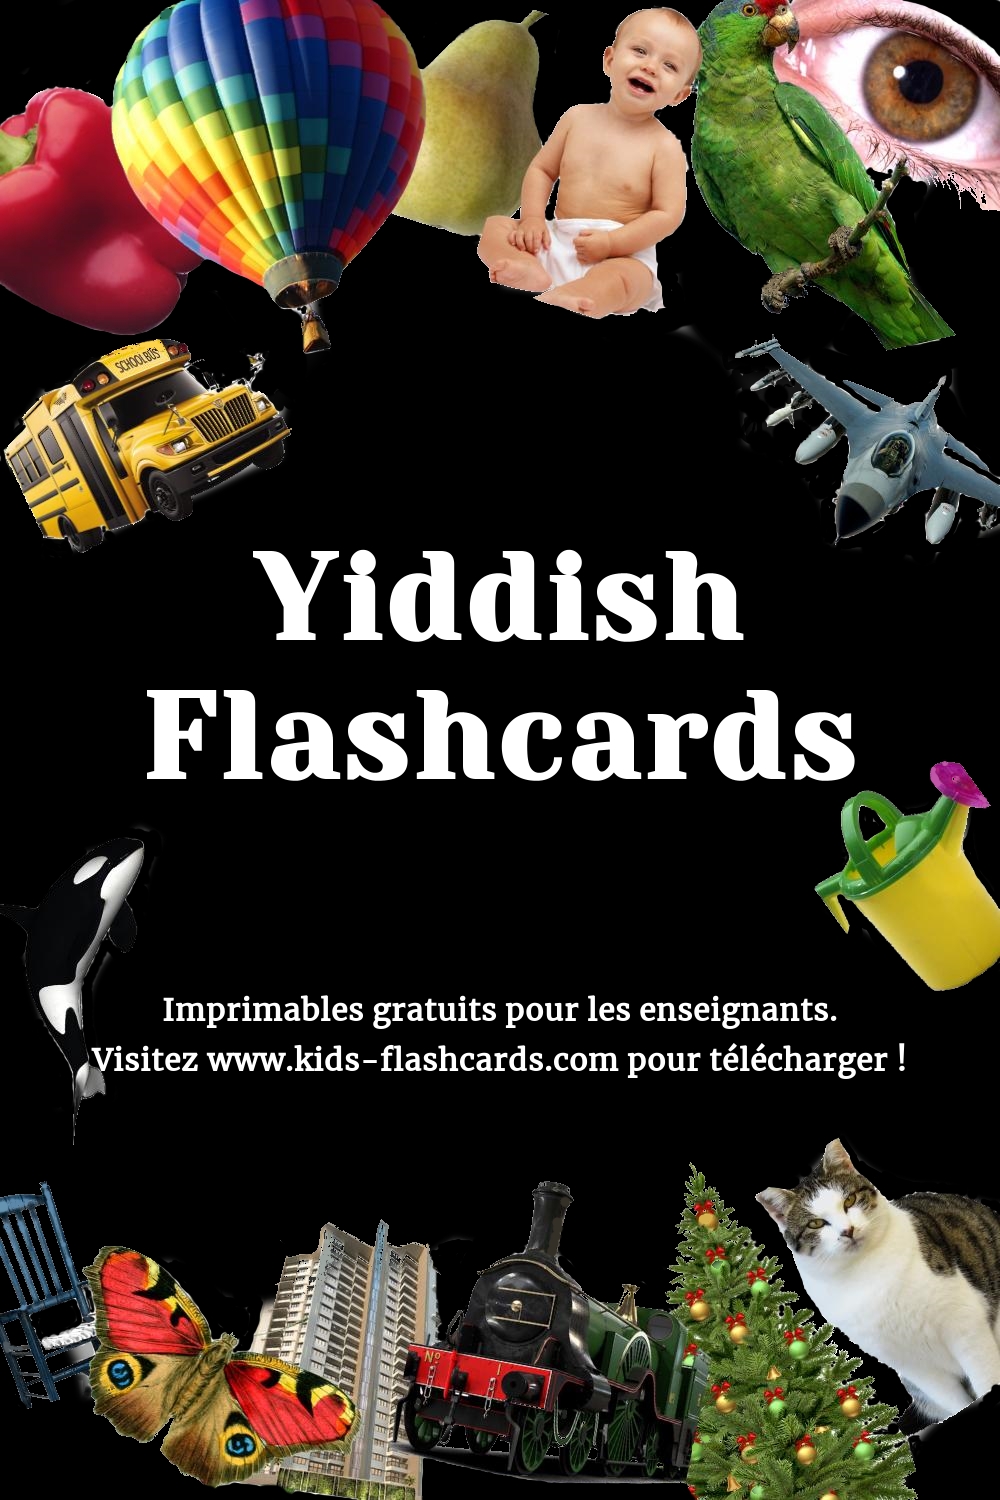 Imprimables gratuits en Yiddish